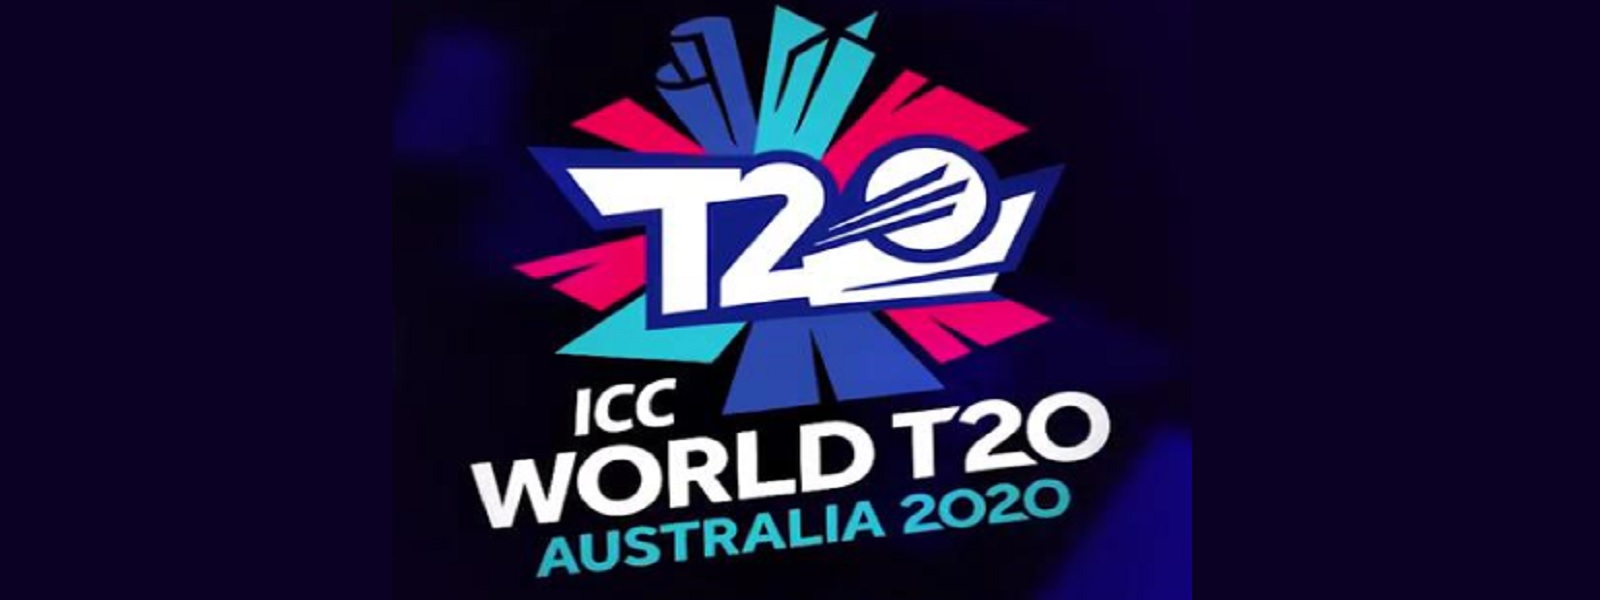 T20 உலகக் கிண்ணத்திற்கான போட்டி அட்டவணை வௌியீடு